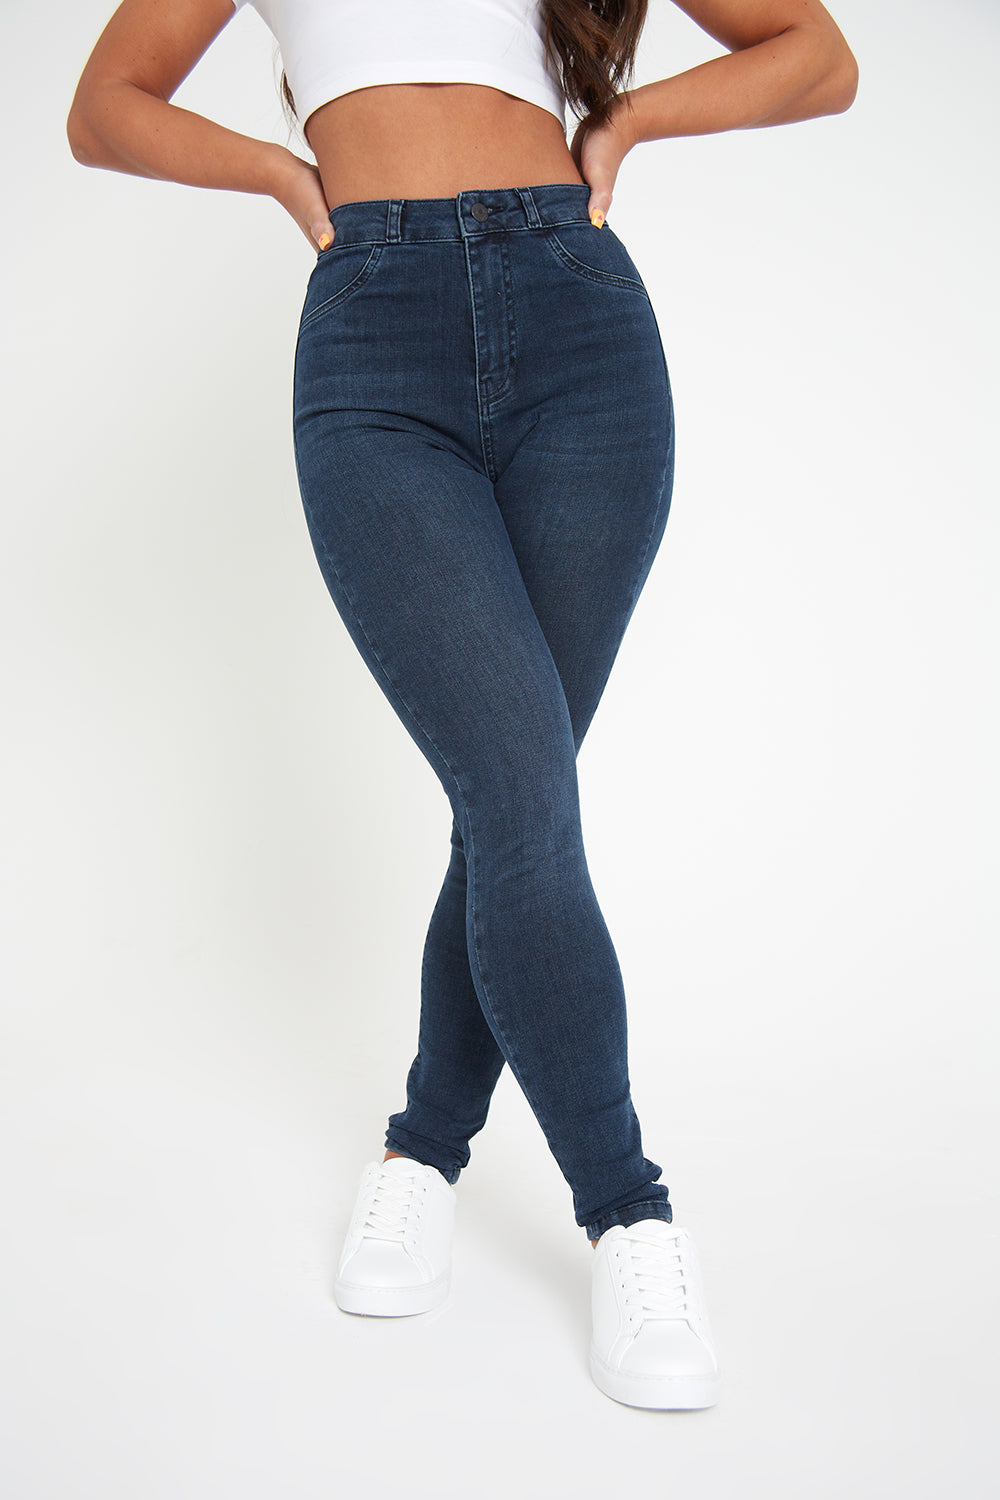 High Waist Jeans for Women, Women's High Rise Jeans